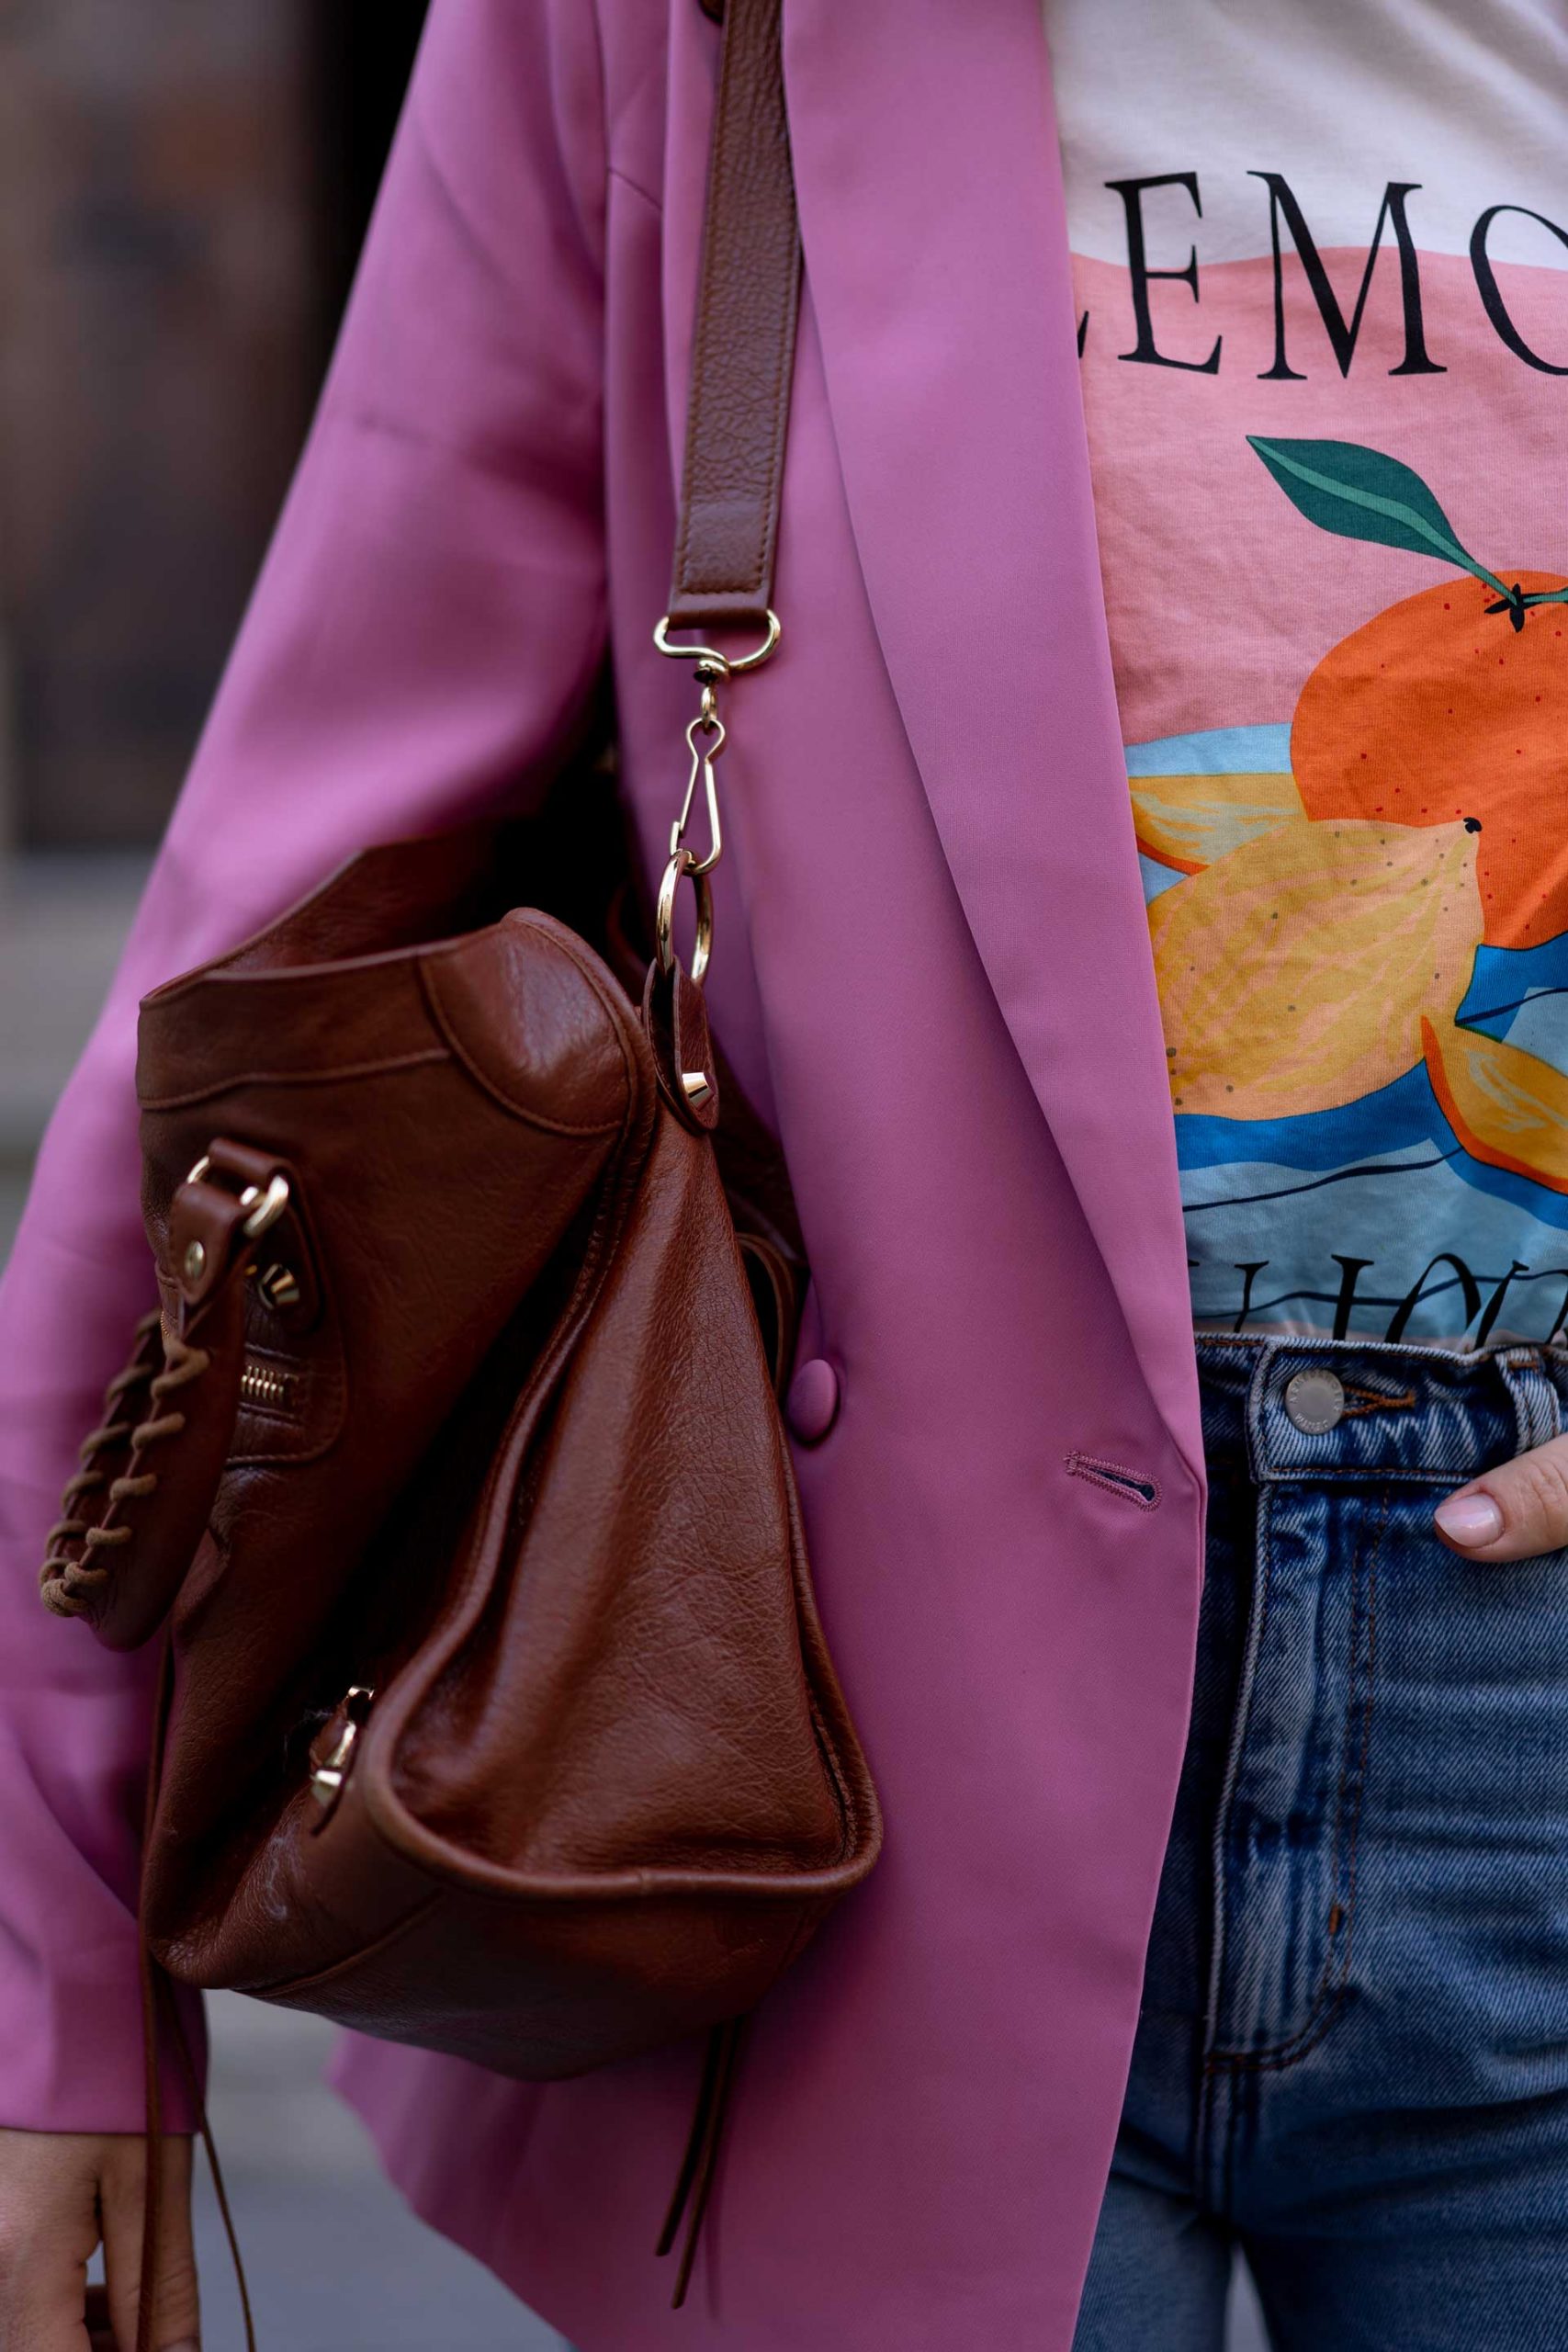 Produktplatzierung. Am Modeblog zeige ich dir ein Herbst Outfit mit Mom Jeans, Blazer und Oversize-Mantel. Alle Teile sind verlinkt, du kannst den Look 1:1 nachshoppen! www.whoismocca.com